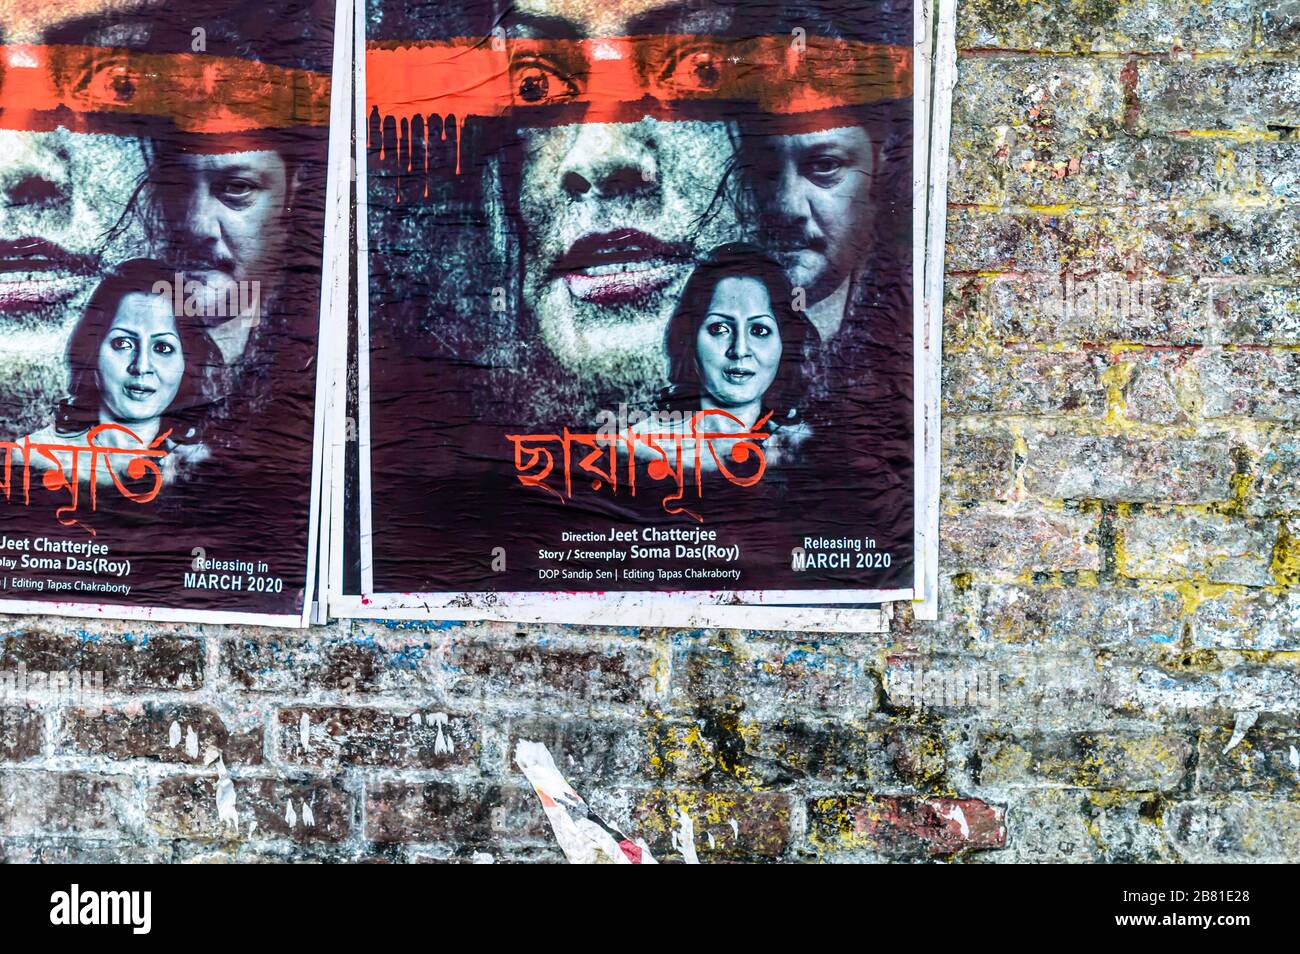 Des affiches de films indiens Bengali Tollywood sur un vieux mur de briques de la rue de la ville. Tollygunge Kolkata Bengale Ouest Inde Asie du Sud Pacifique Mars 2020 Banque D'Images